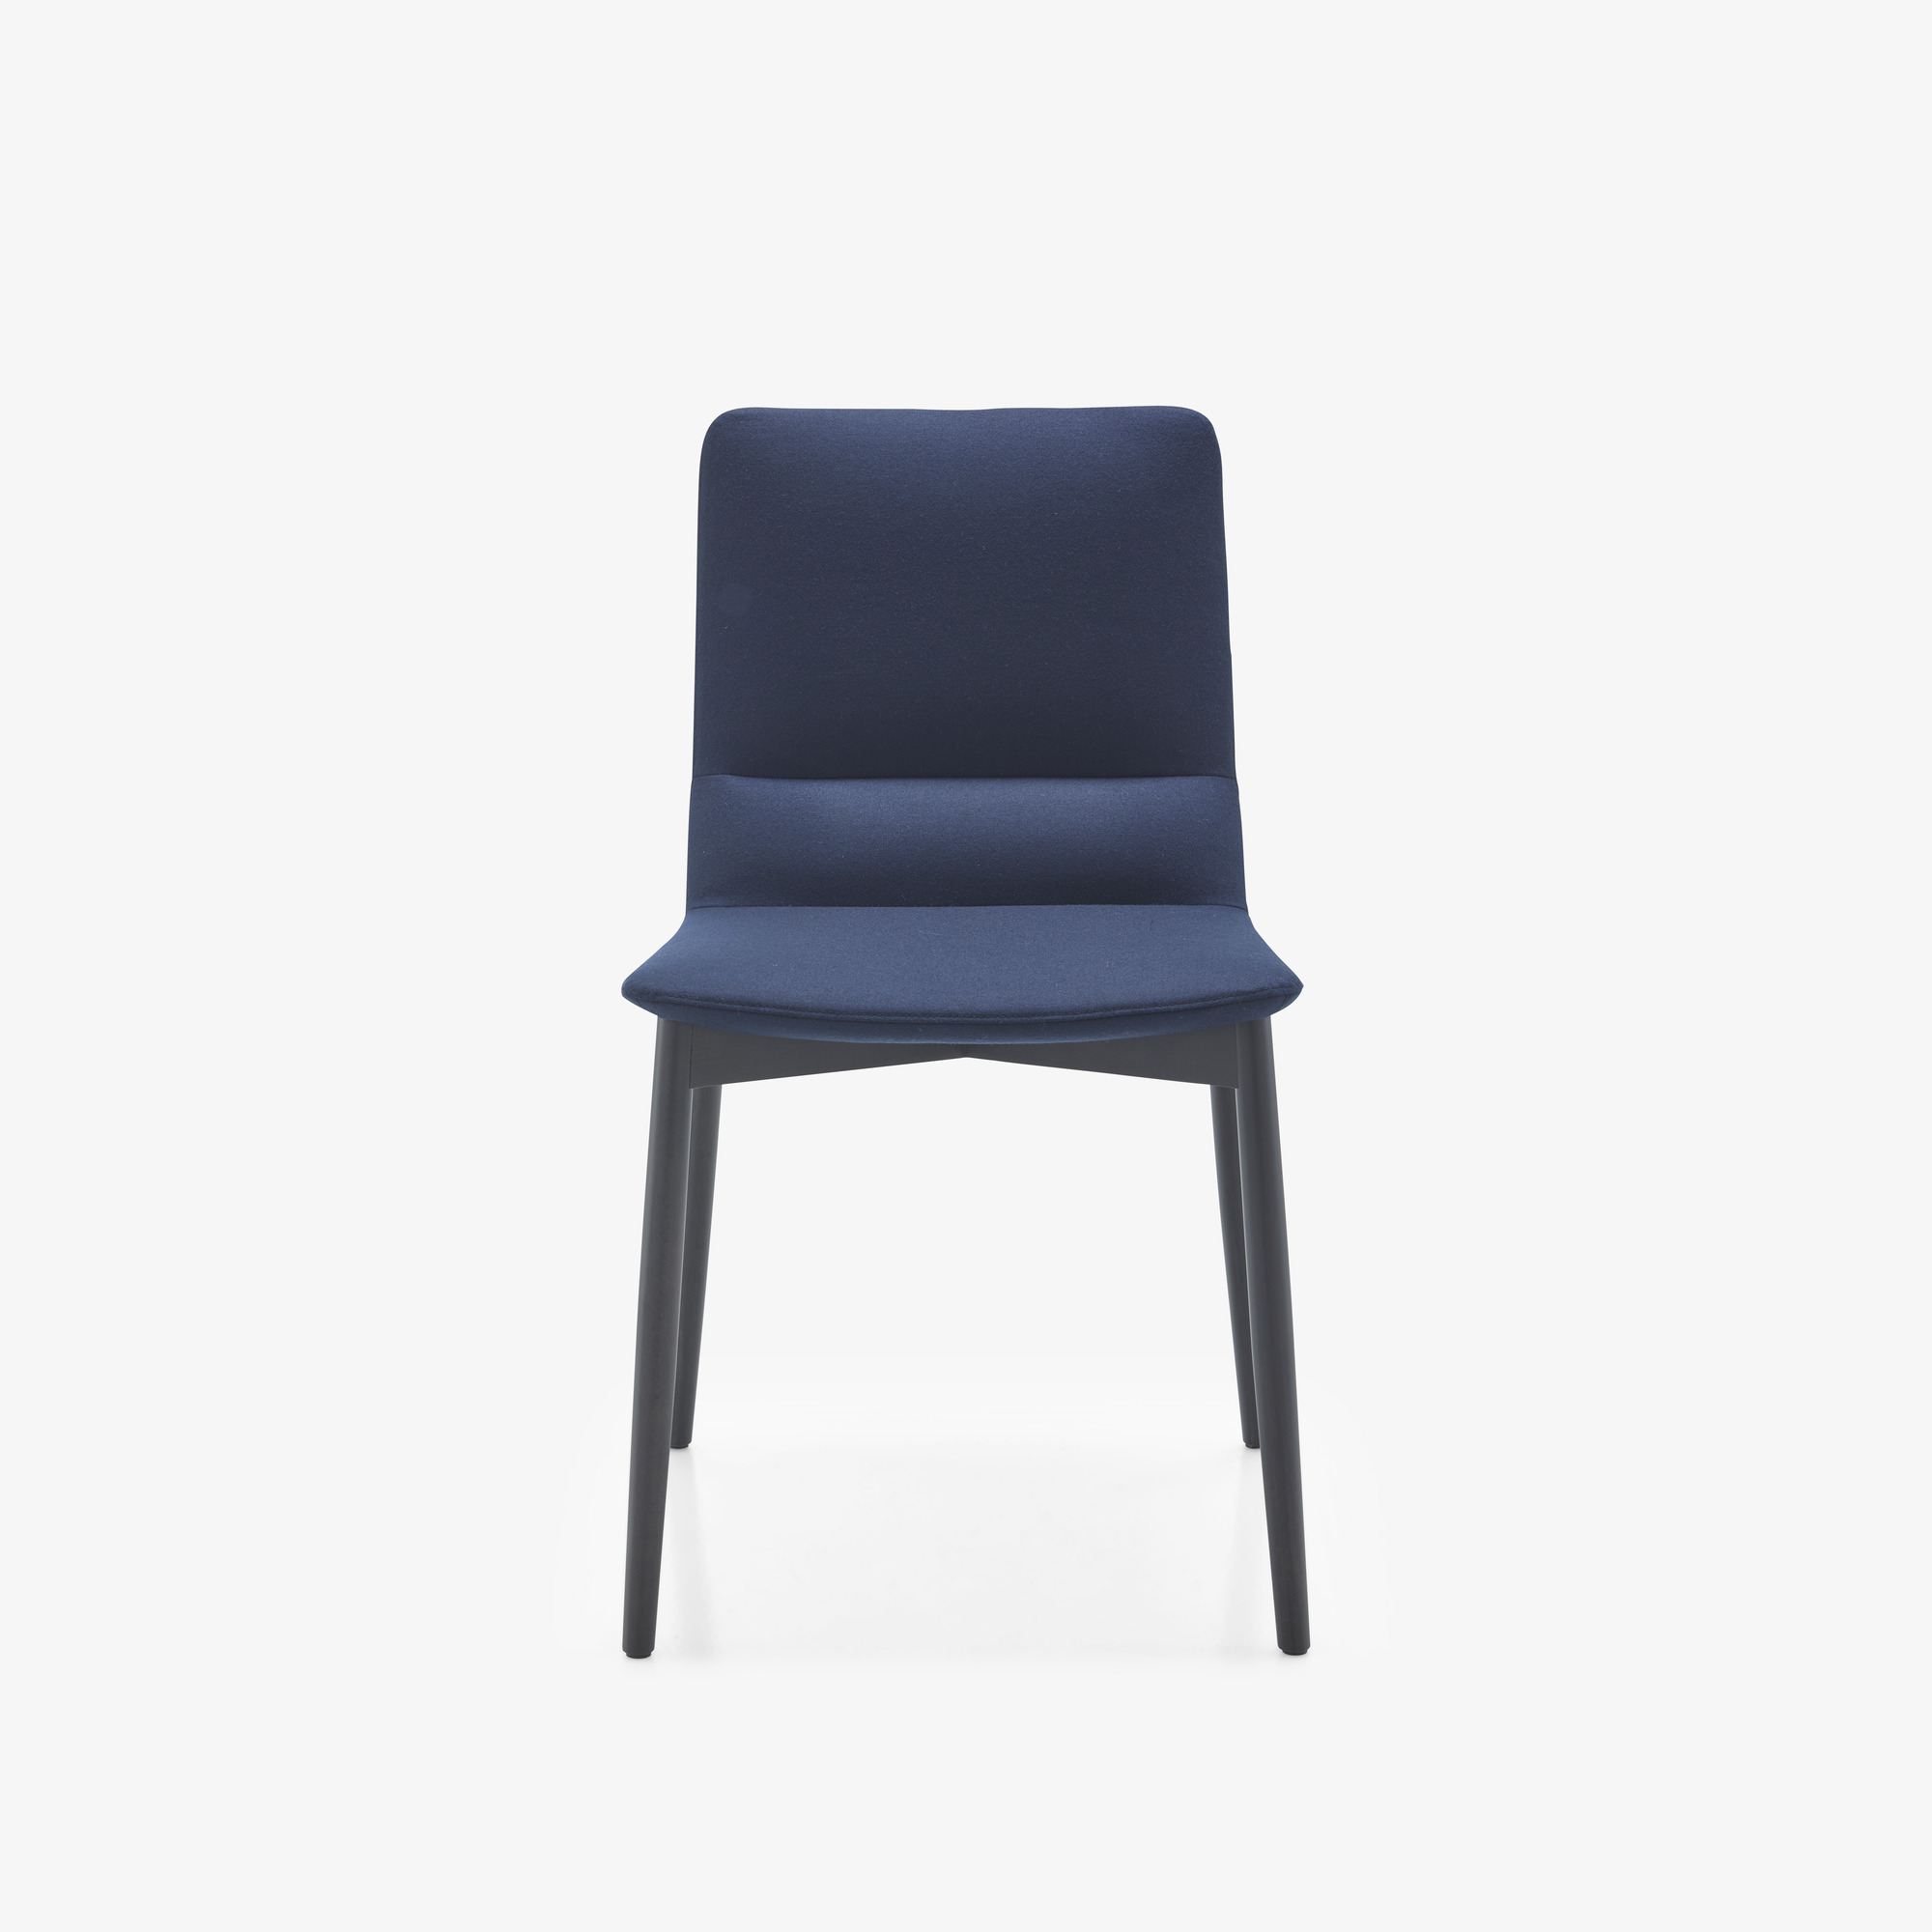 Image 椅子 榉木底座 1